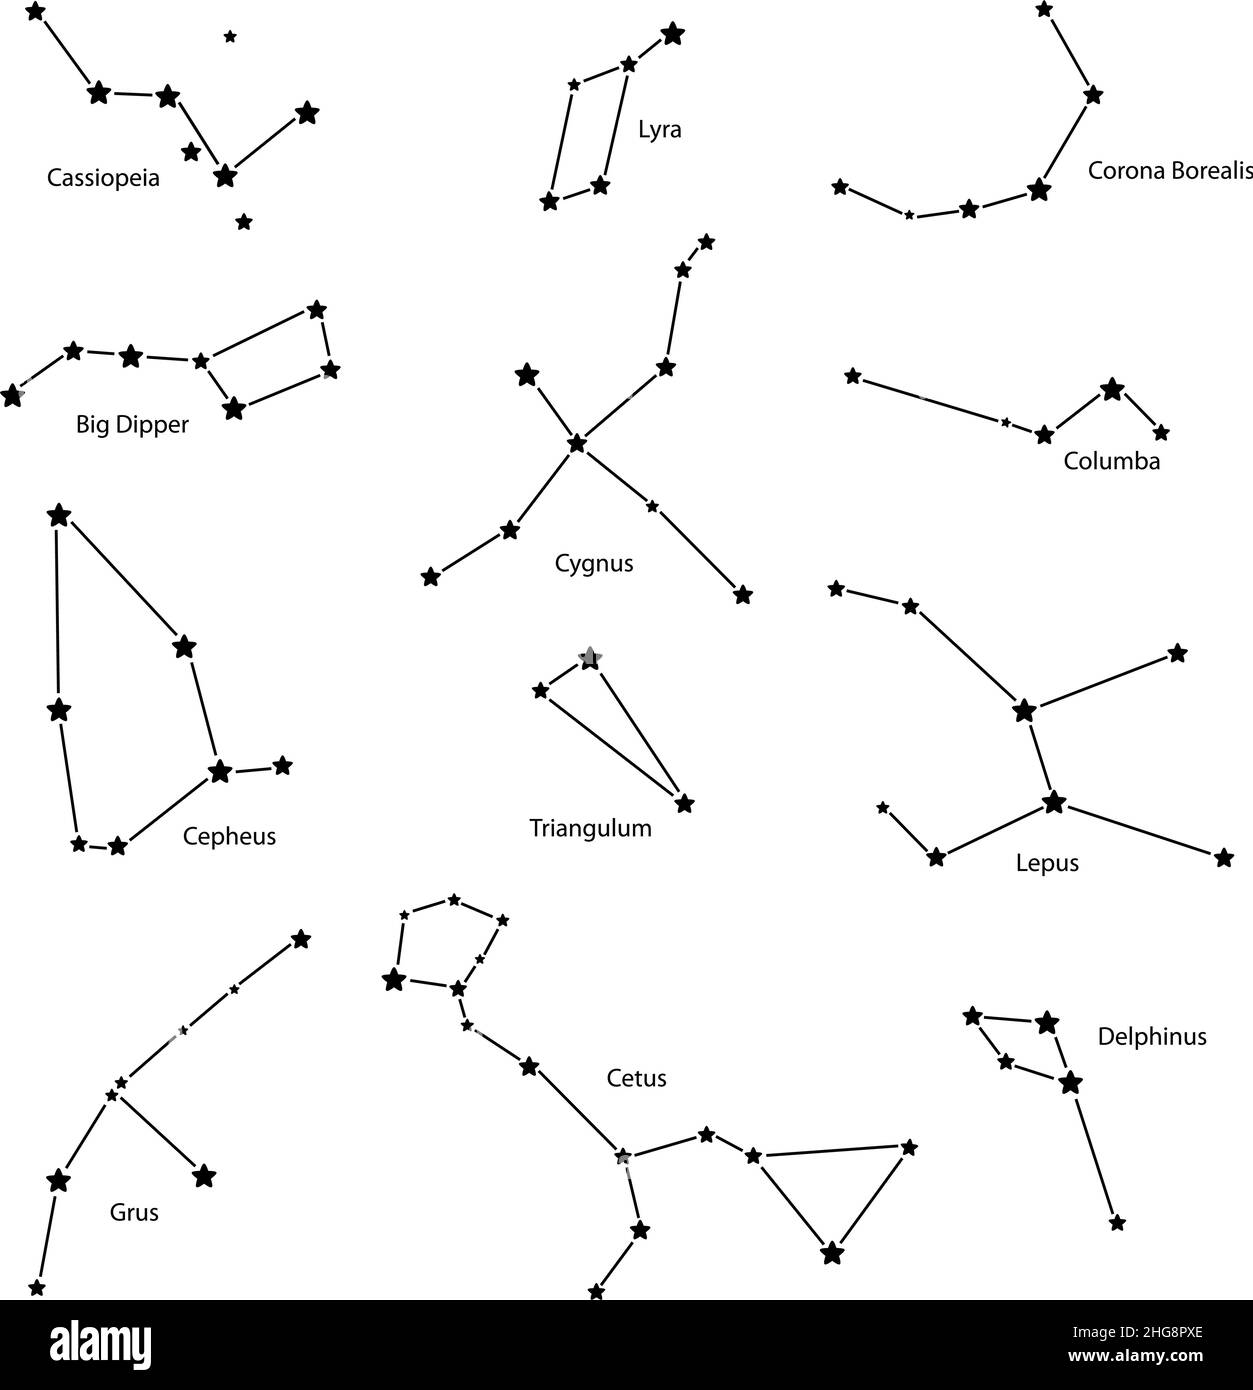 Constellations: cassiopeia, big dipper, cepheus, lyra, grus, cygnus, triangulum, cetus, corona borealis, columba, lepus, delphinus, vector illustratio Stock Vector